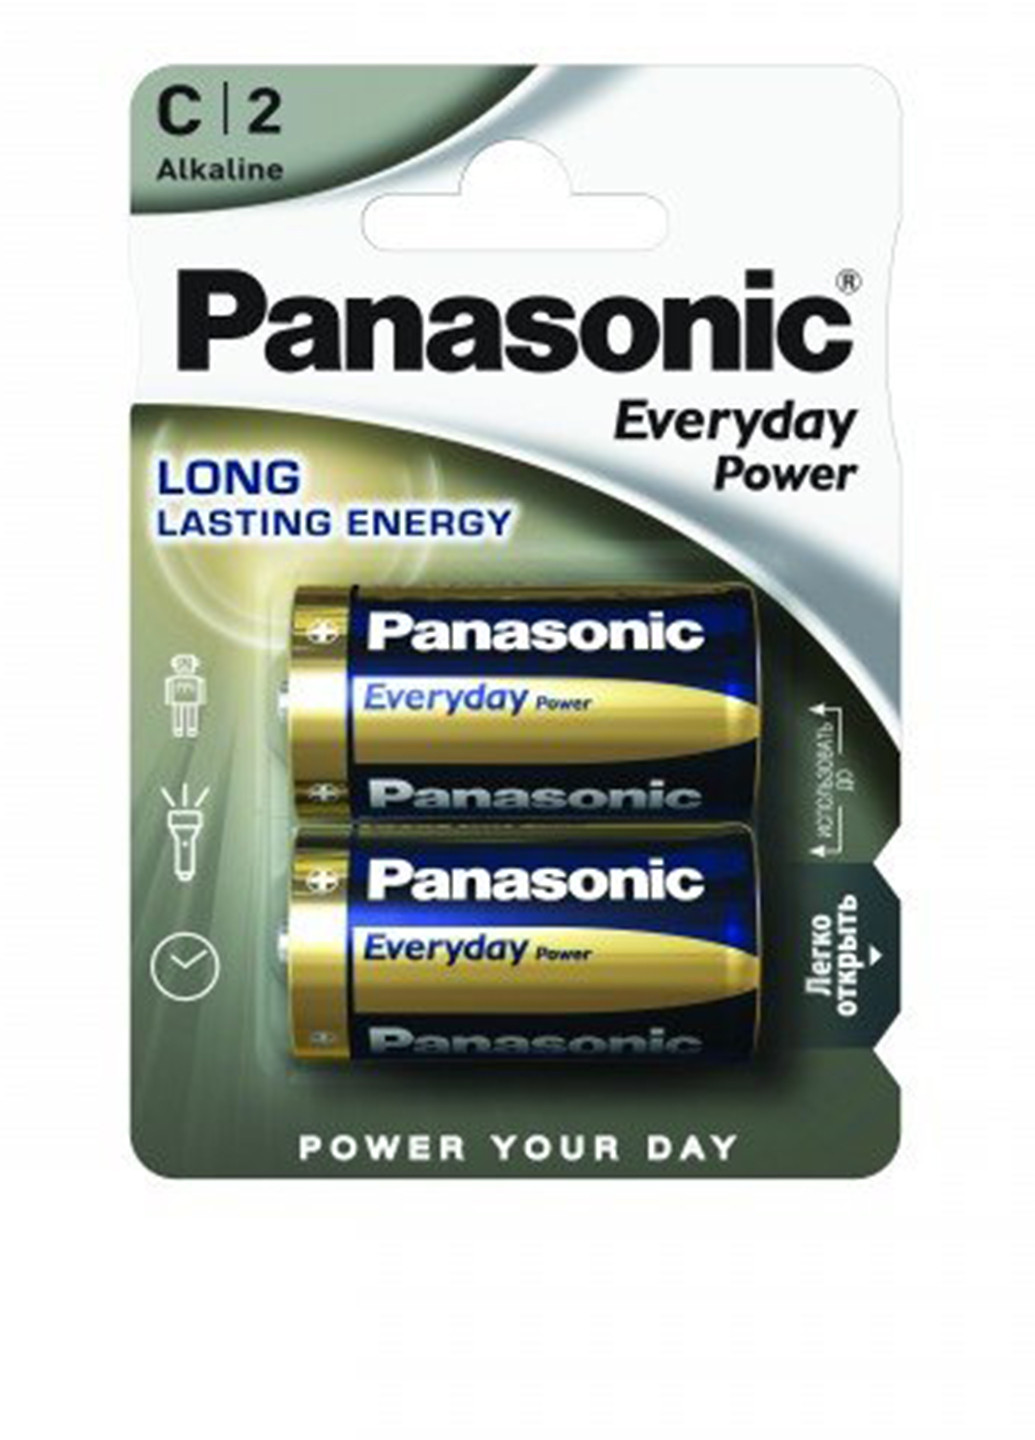 Батарейка EVERYDAY POWER C BLI 2 ALKALINE (LR14REE / 2BR) Panasonic everyday power c bli 2 alkaline (lr14ree/2br) (138004348)